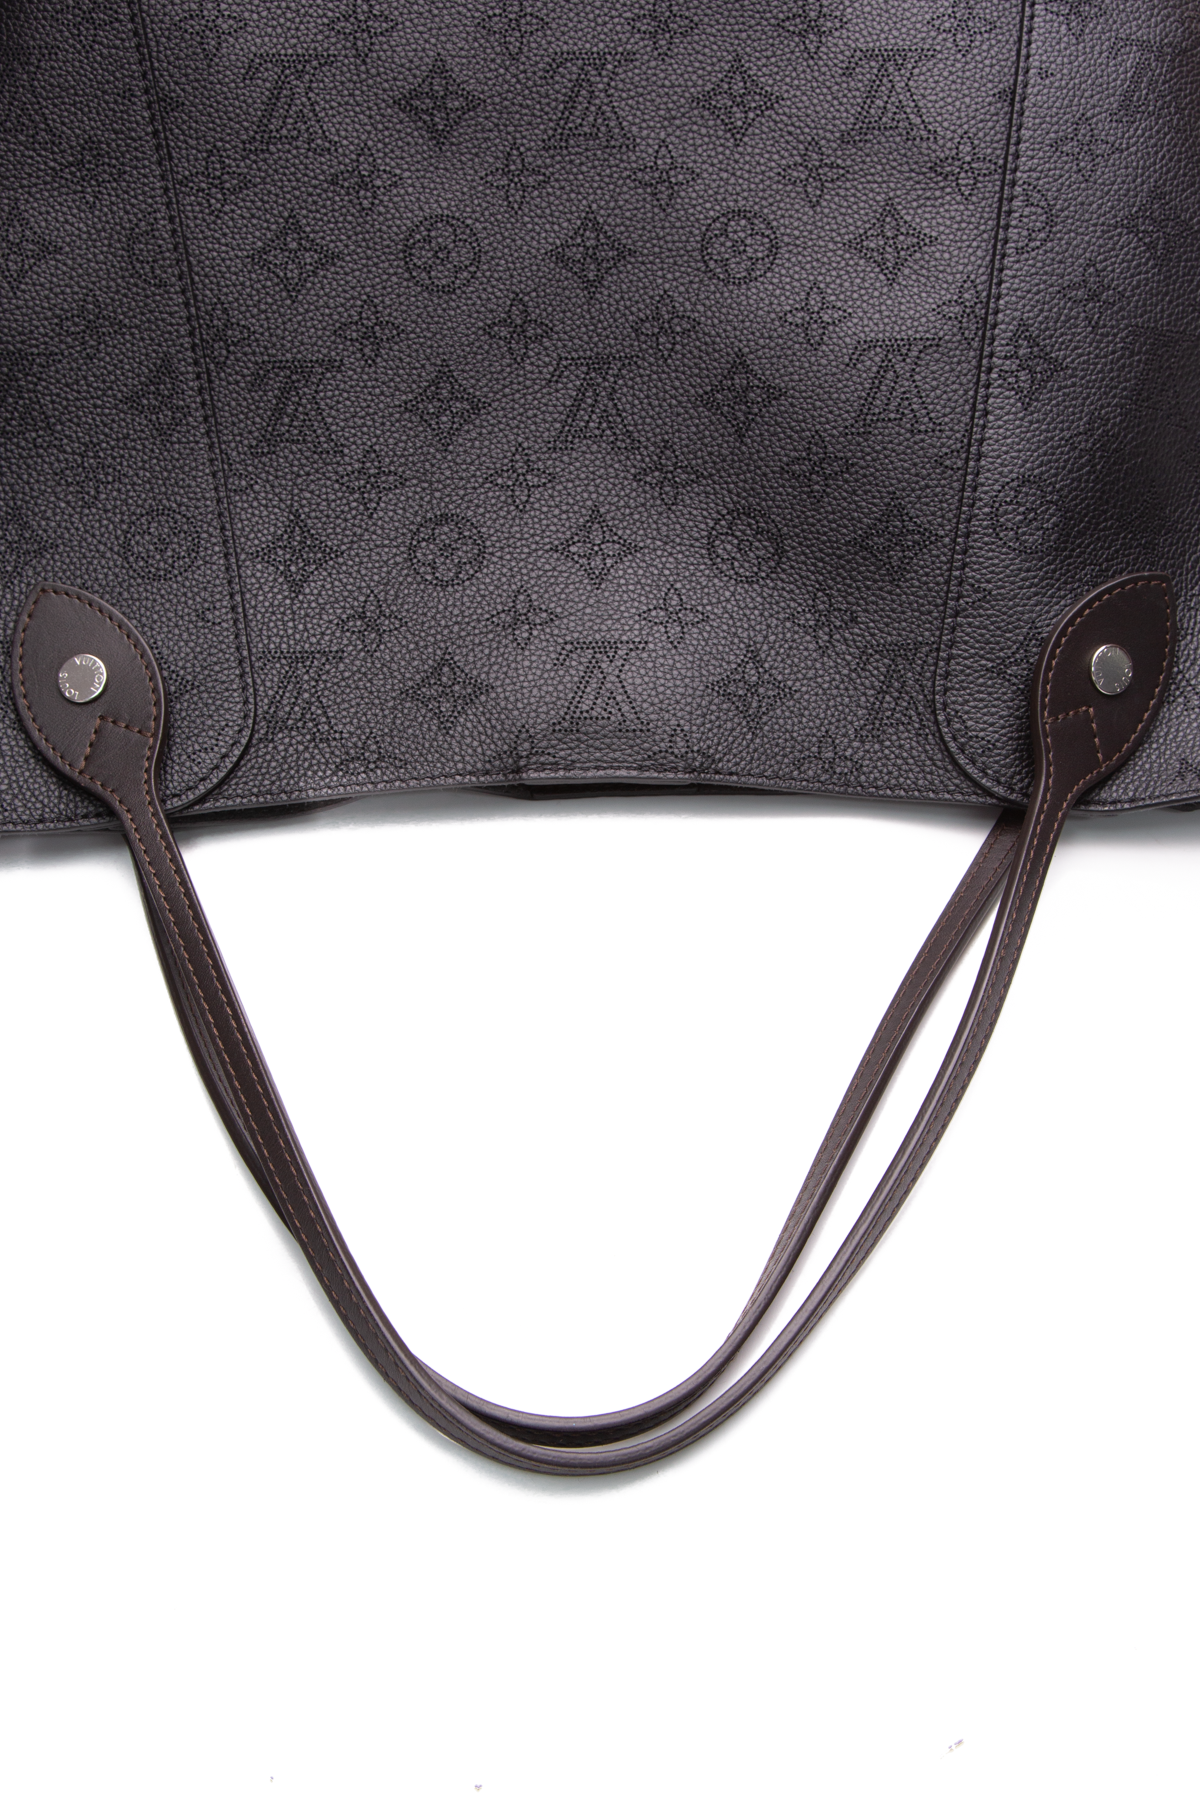 Zip Canvas Tote: Longchamp or Fauré Le Page? : r/handbags